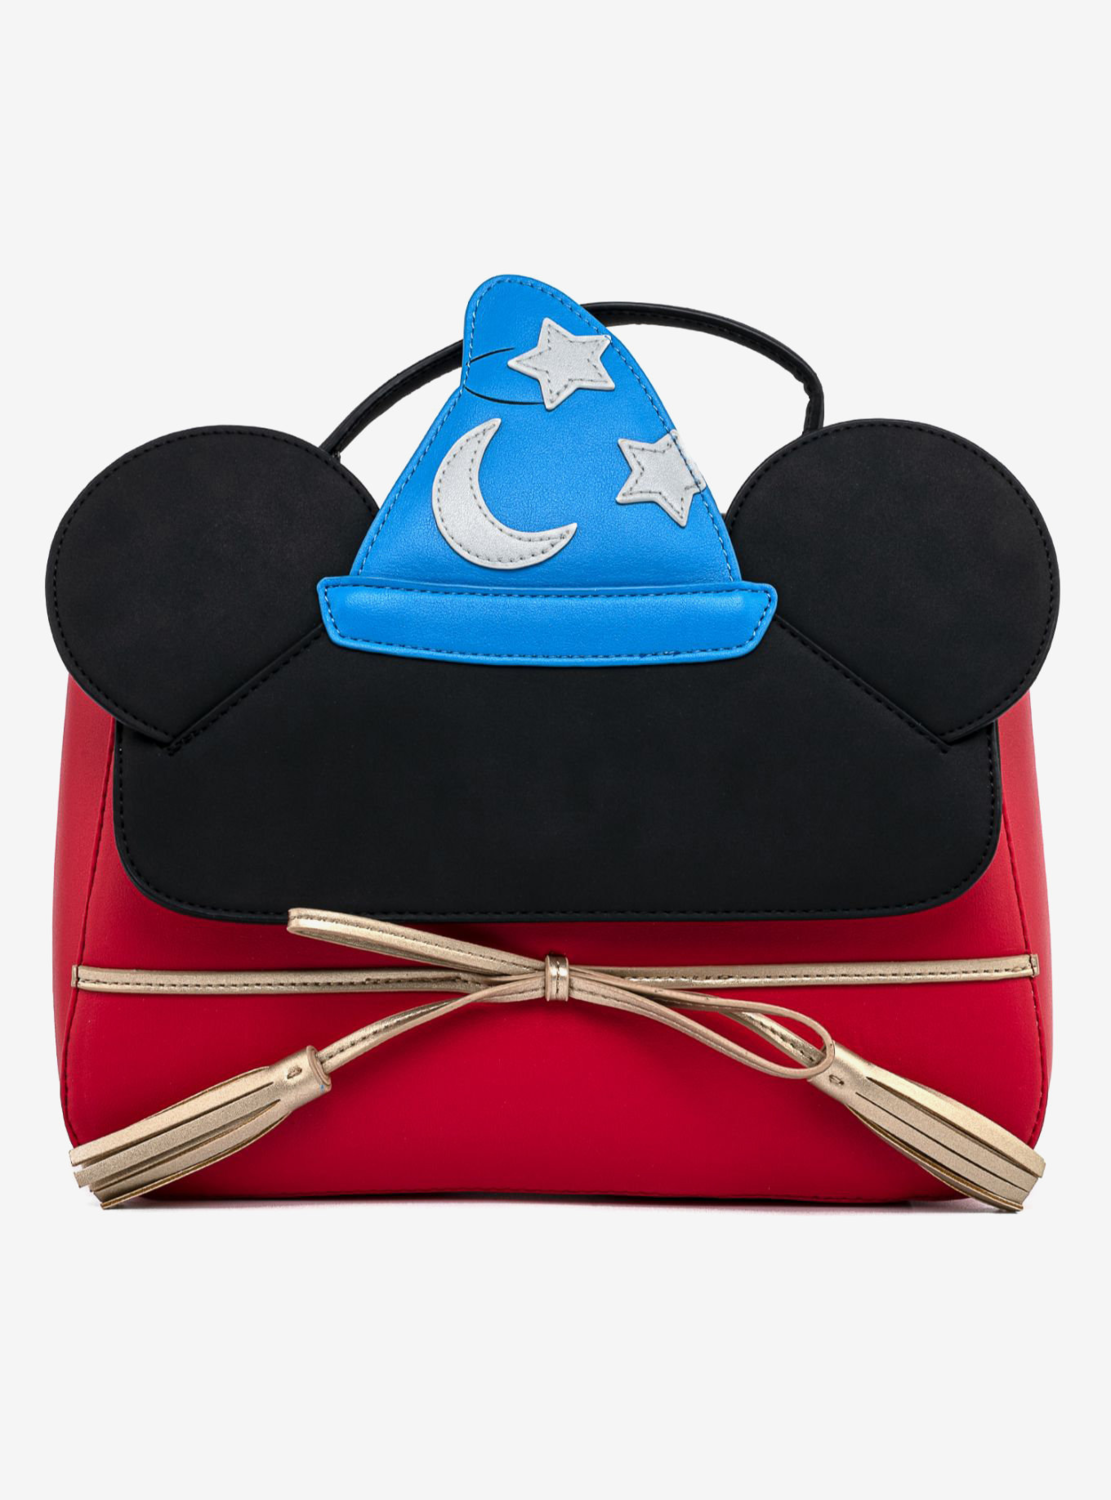 Bolsa Mickey Mouse Fantasia x2020